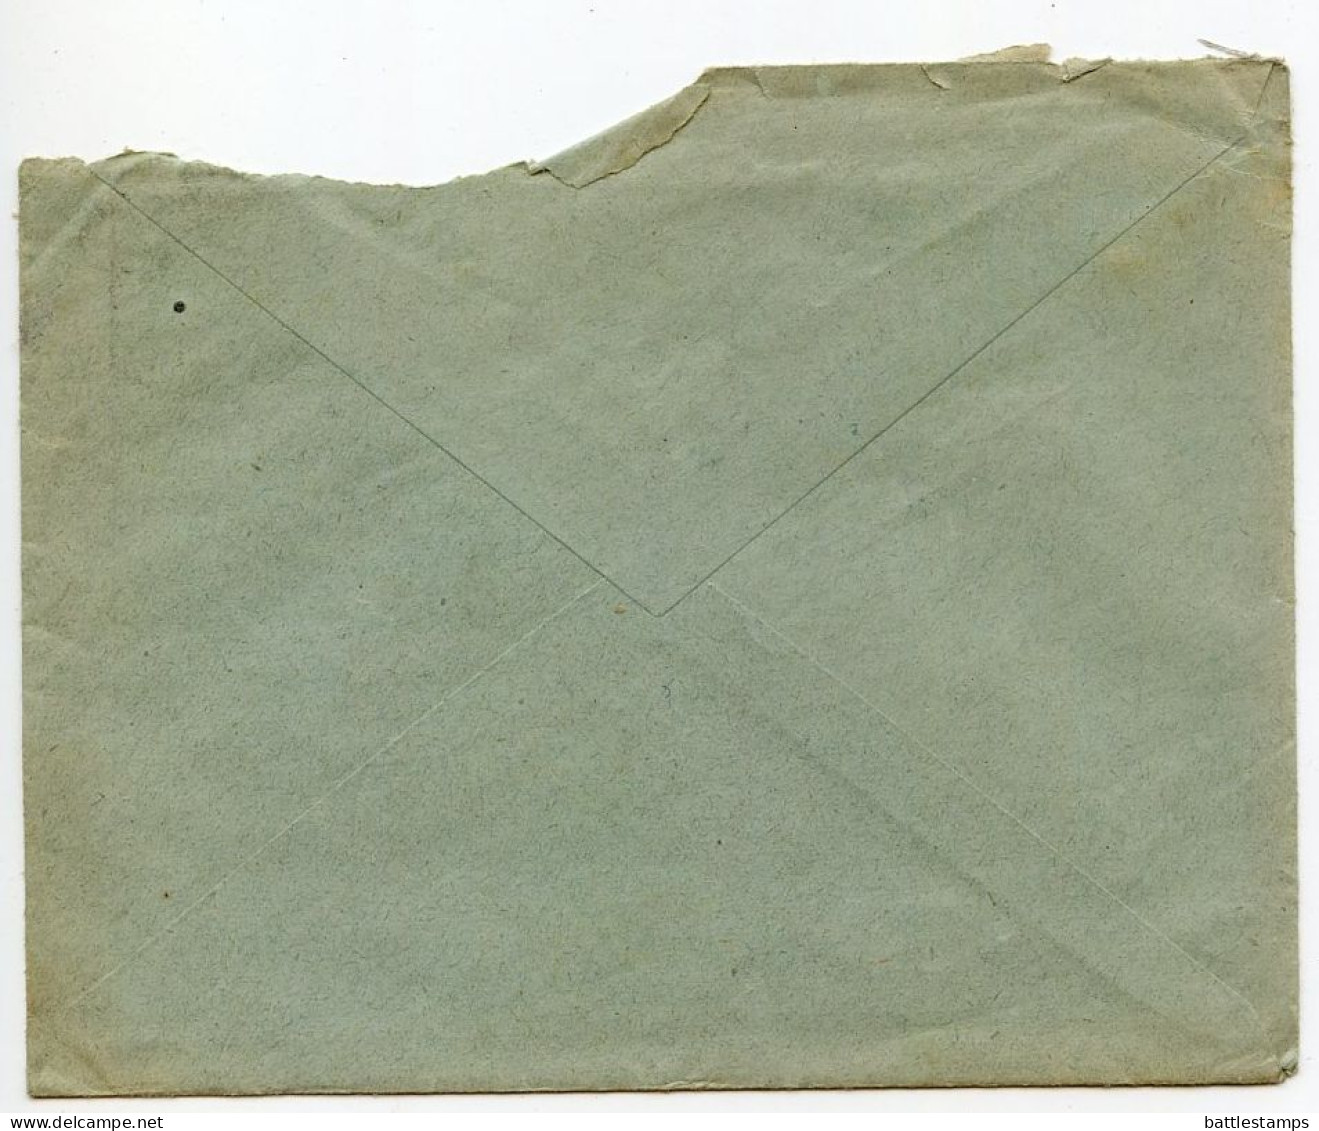 Germany 1927 Cover & Letter; Meura (Thüringerw) - Meurasan, O.R. Reinhold Jahn To Ostenfelde; 15pf. Immanuel Kant - Brieven En Documenten